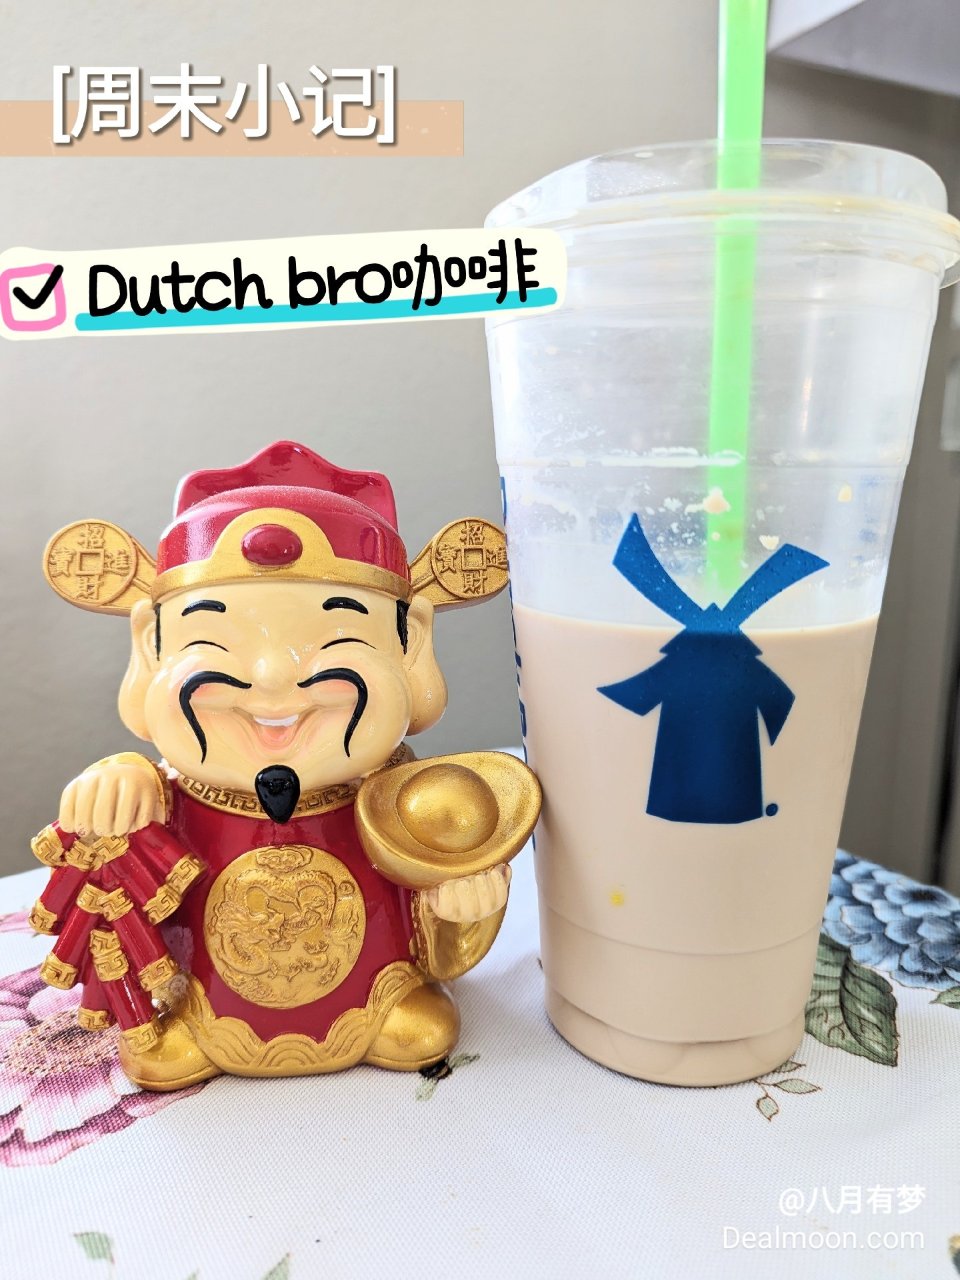 对我来说是回忆的Dutch bro咖啡...